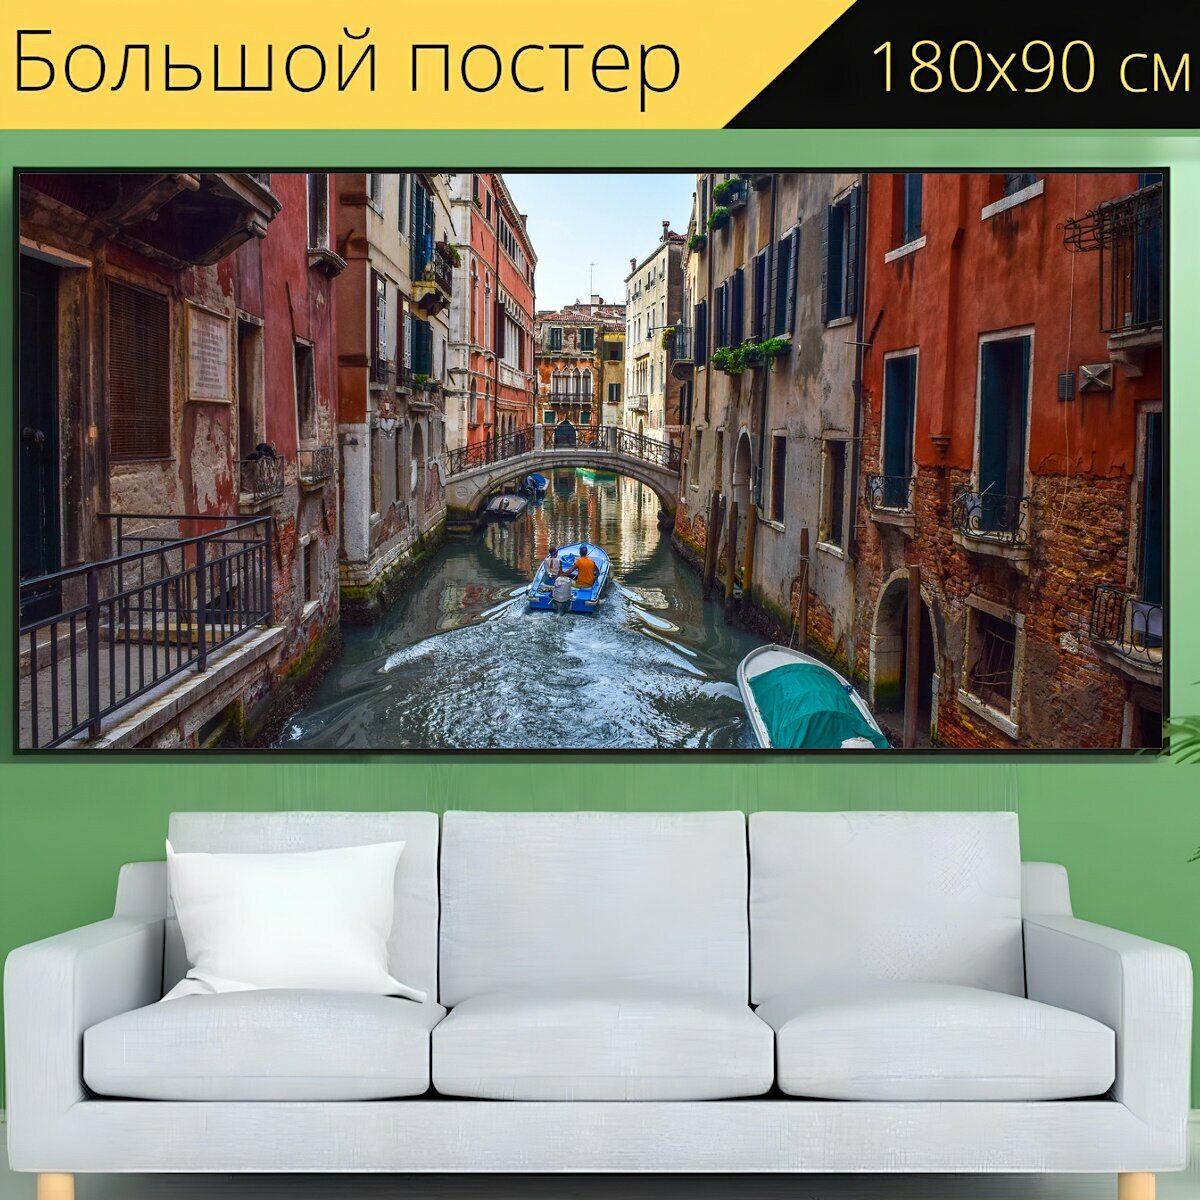 Большой постер "Италия, венеция, канал" 180 x 90 см. для интерьера